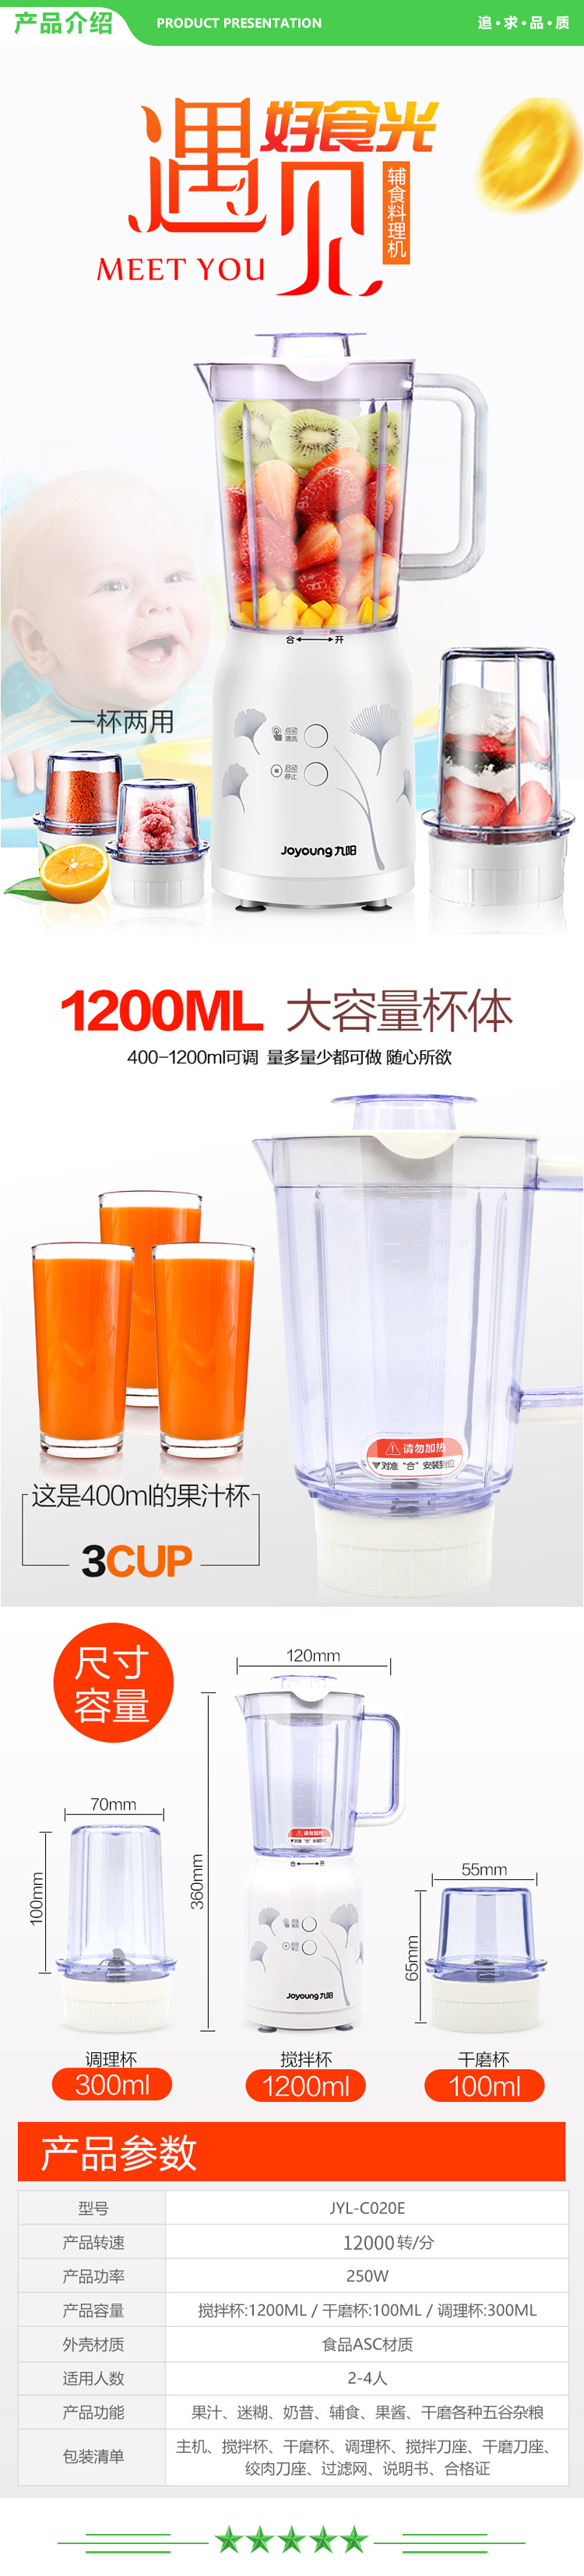 九阳 Joyoung JYL-C020E 料理机 多功能榨汁机搅拌机婴儿辅食榨汁杯三杯配置.jpg